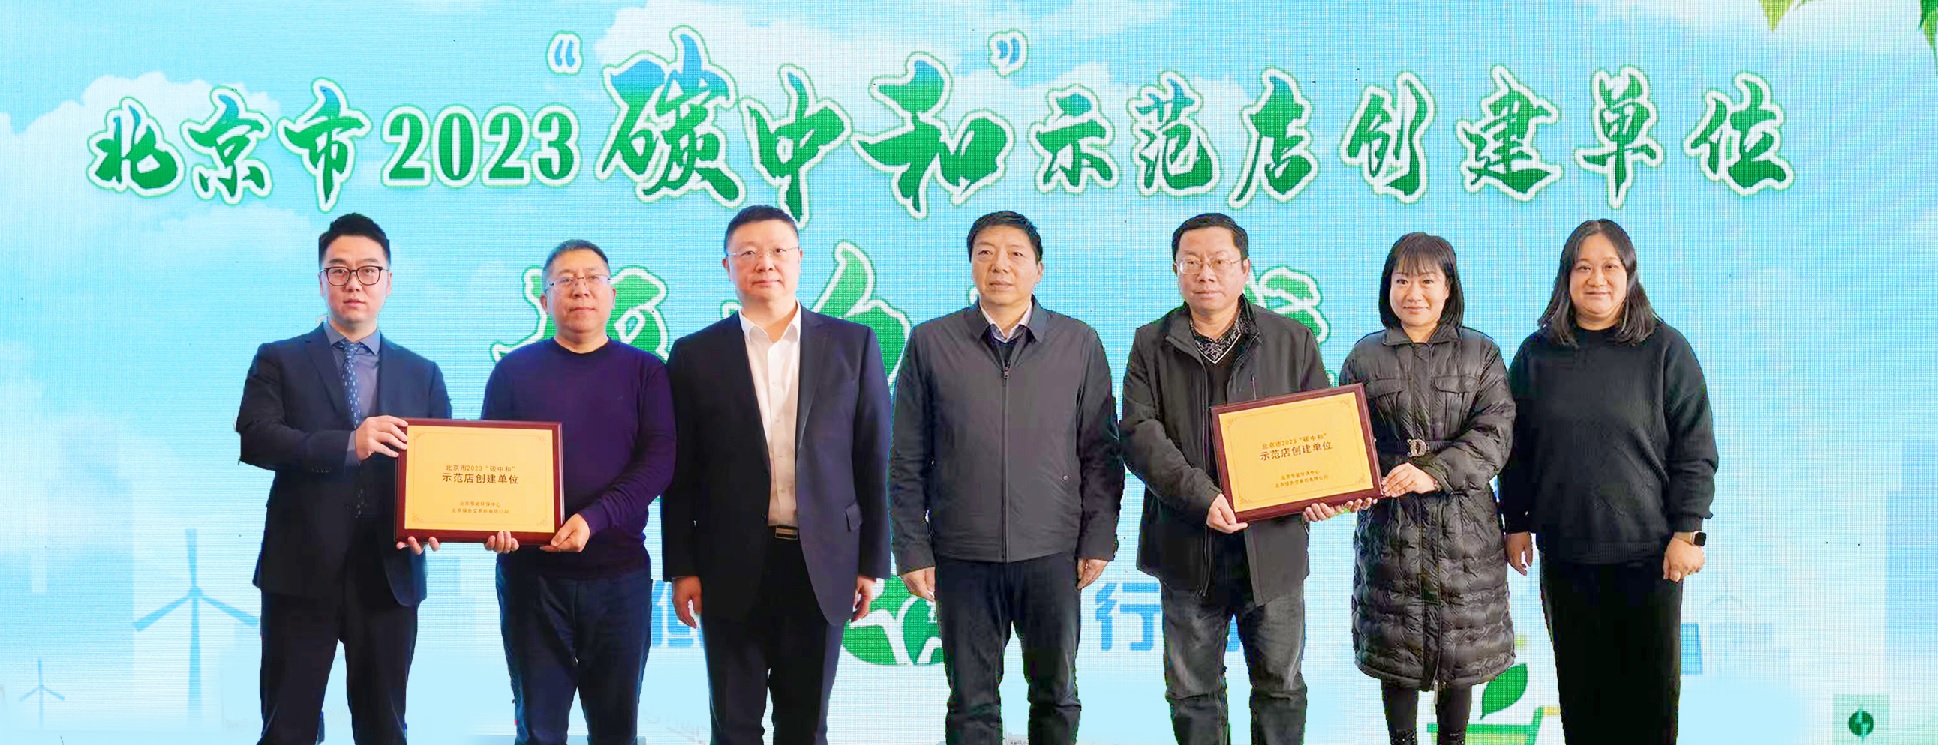 首批“碳中和示范店创建单位”获授牌北京开启商超碳中和“北京模式”